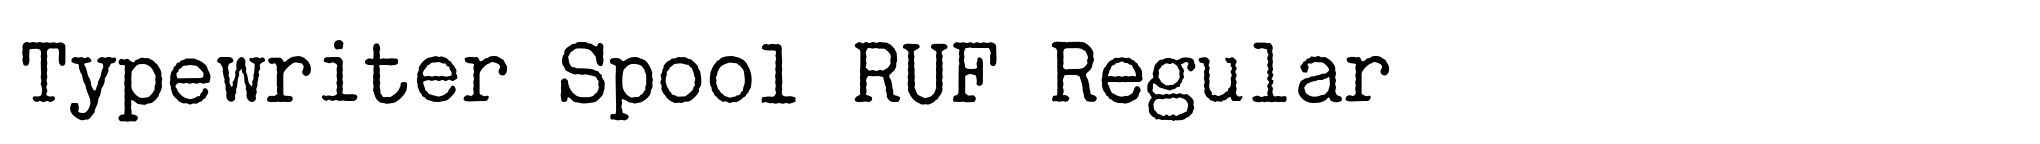 Typewriter Spool RUF Regular image